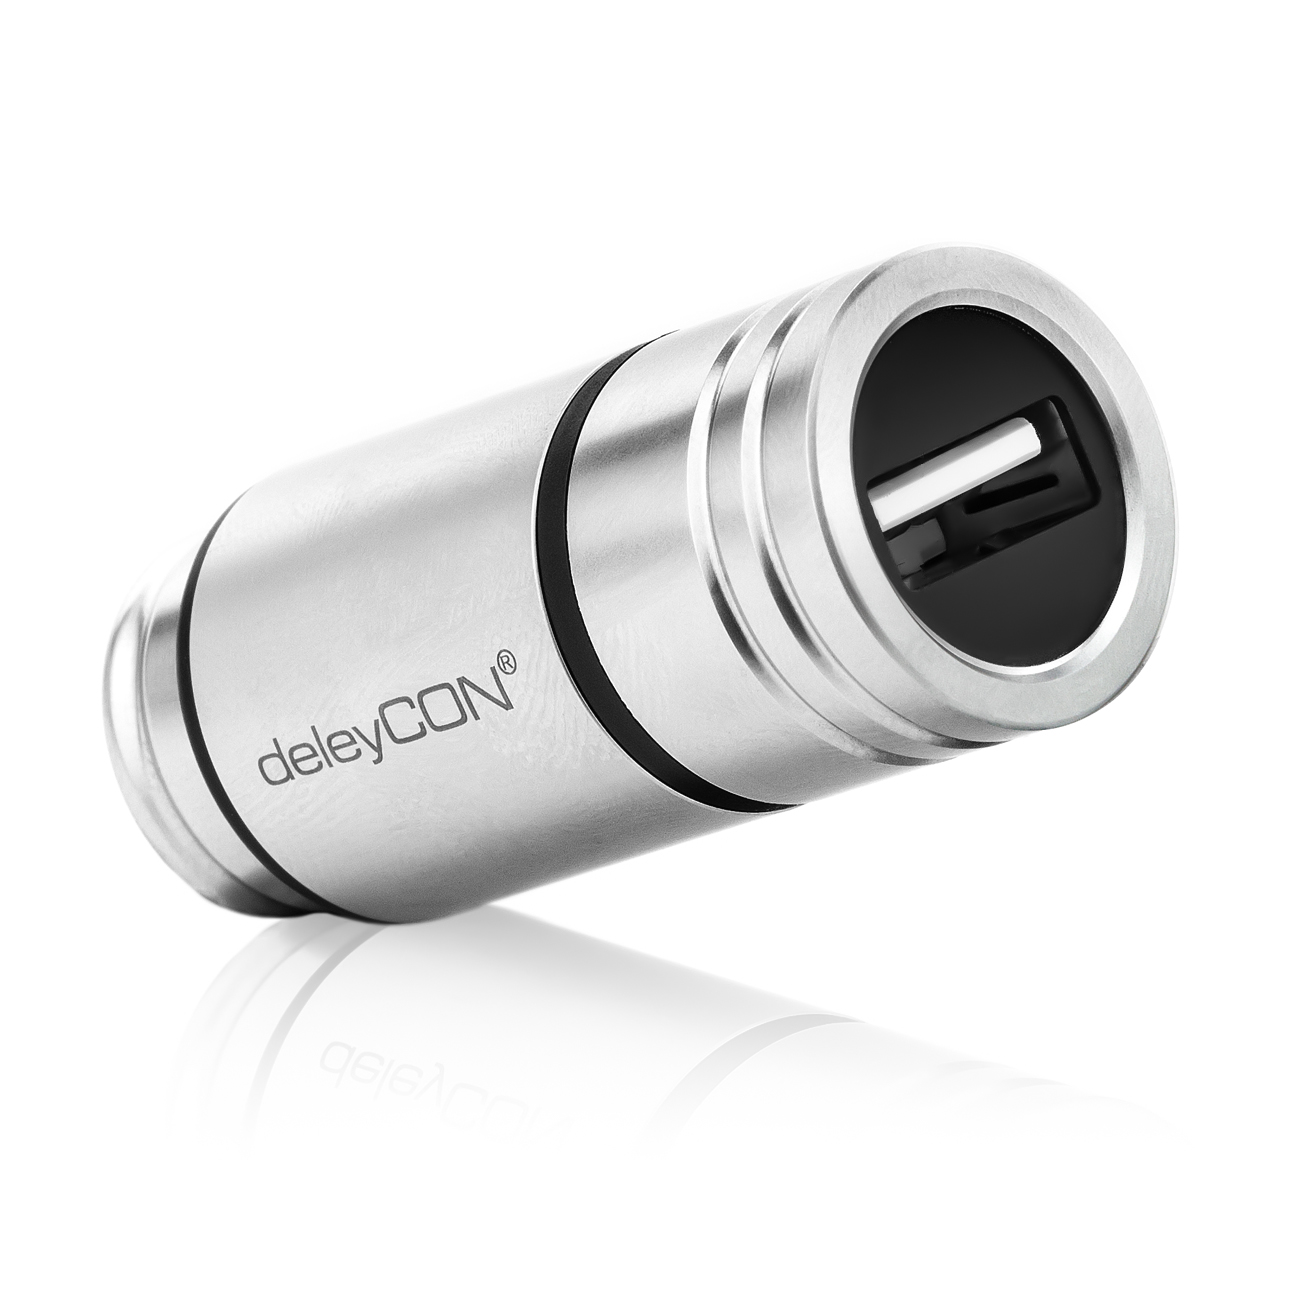 deleyCON 2,4A Zigarettenanzünder USB Ladegerät - 2400mA